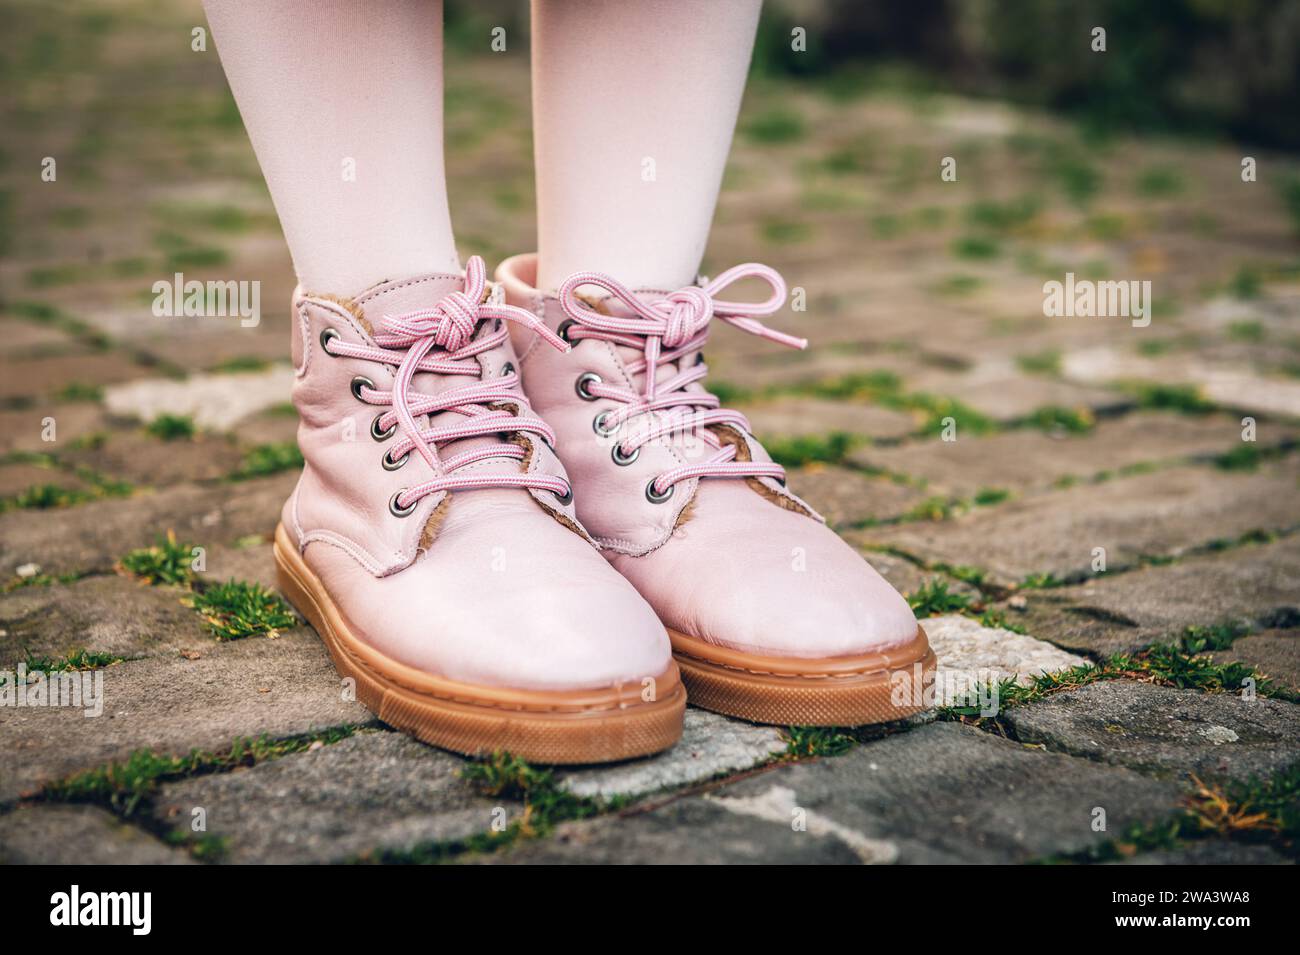 Pinkfarbene Schuhe auf Kinderfüßen Stockfoto